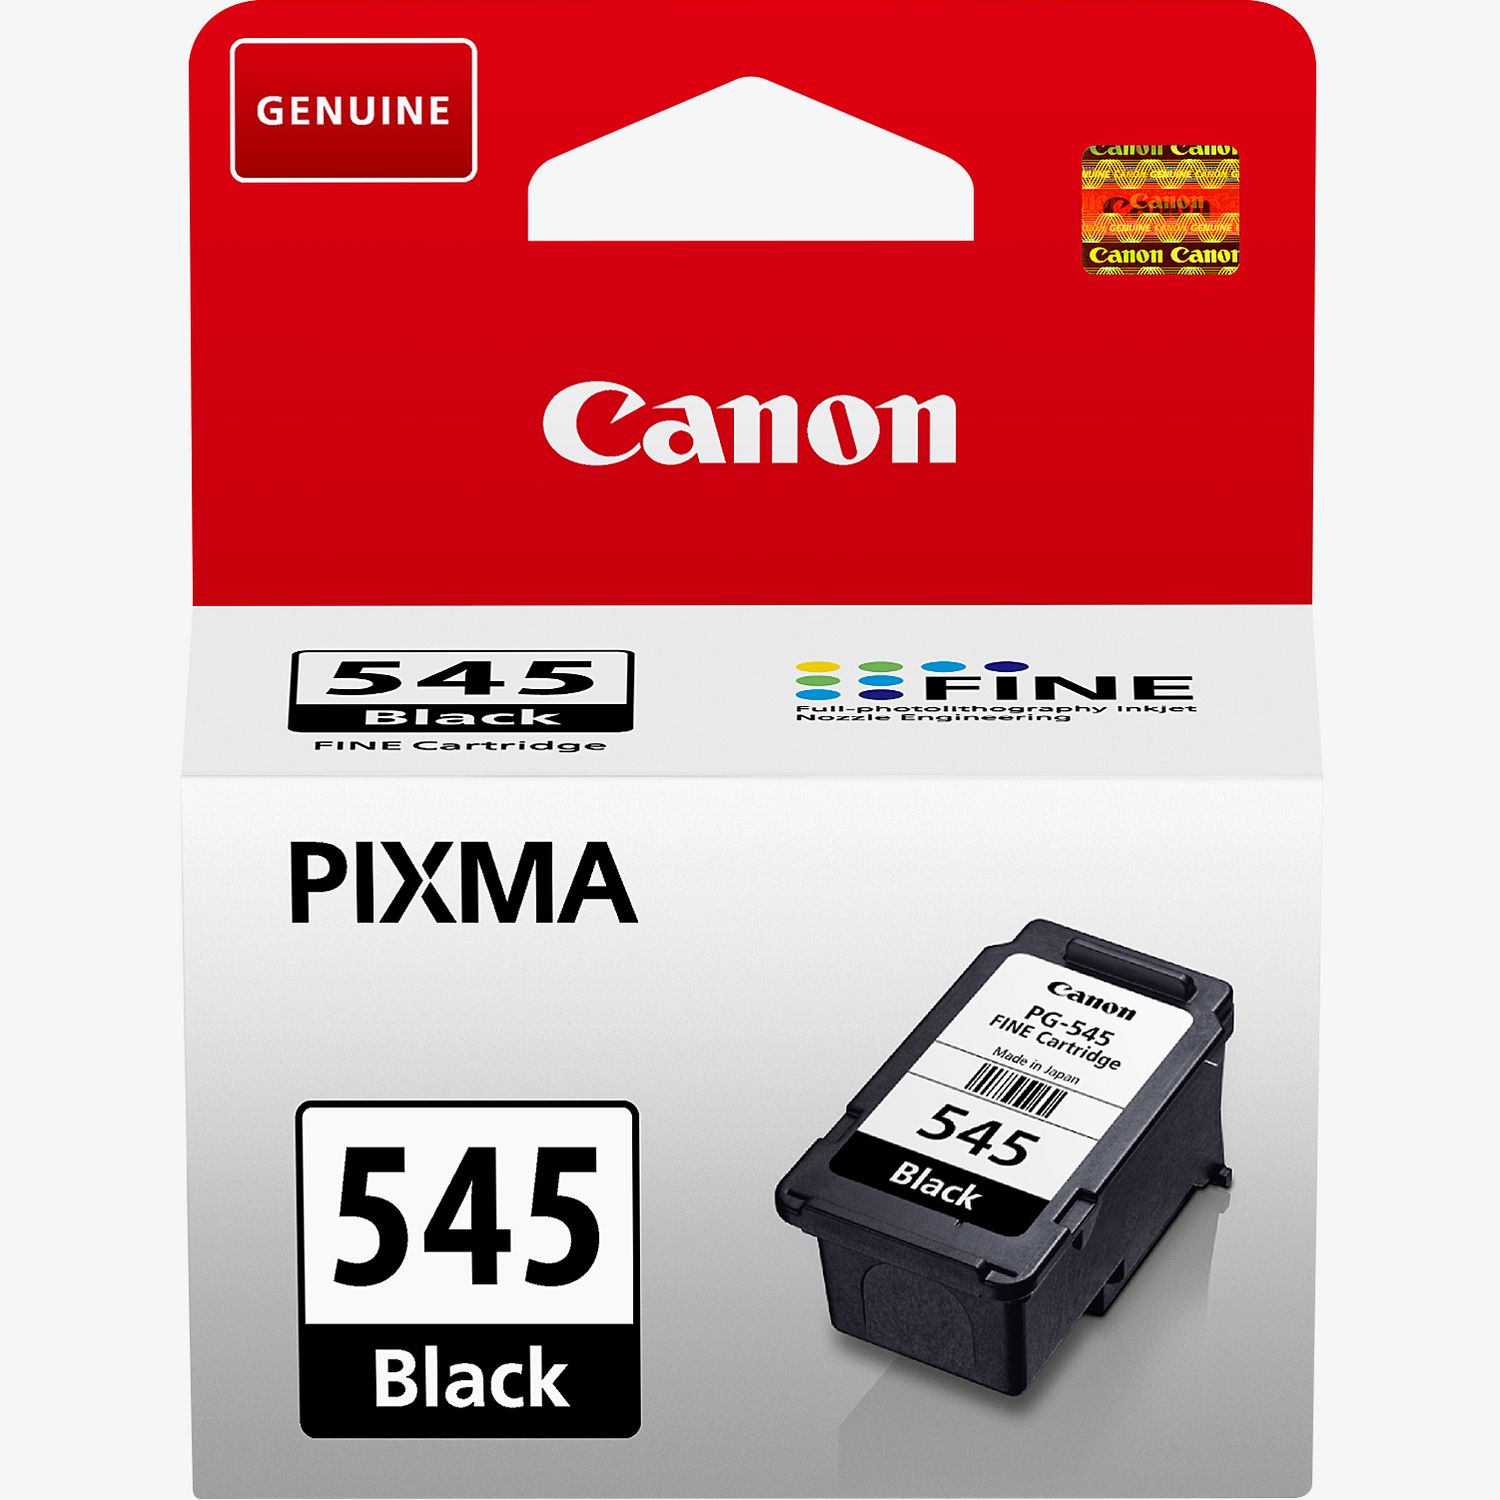 Stampante Canon PIXMA TS3350 Multifunzione a Colori Getto d'Inchiostro  scanner 4549292143867